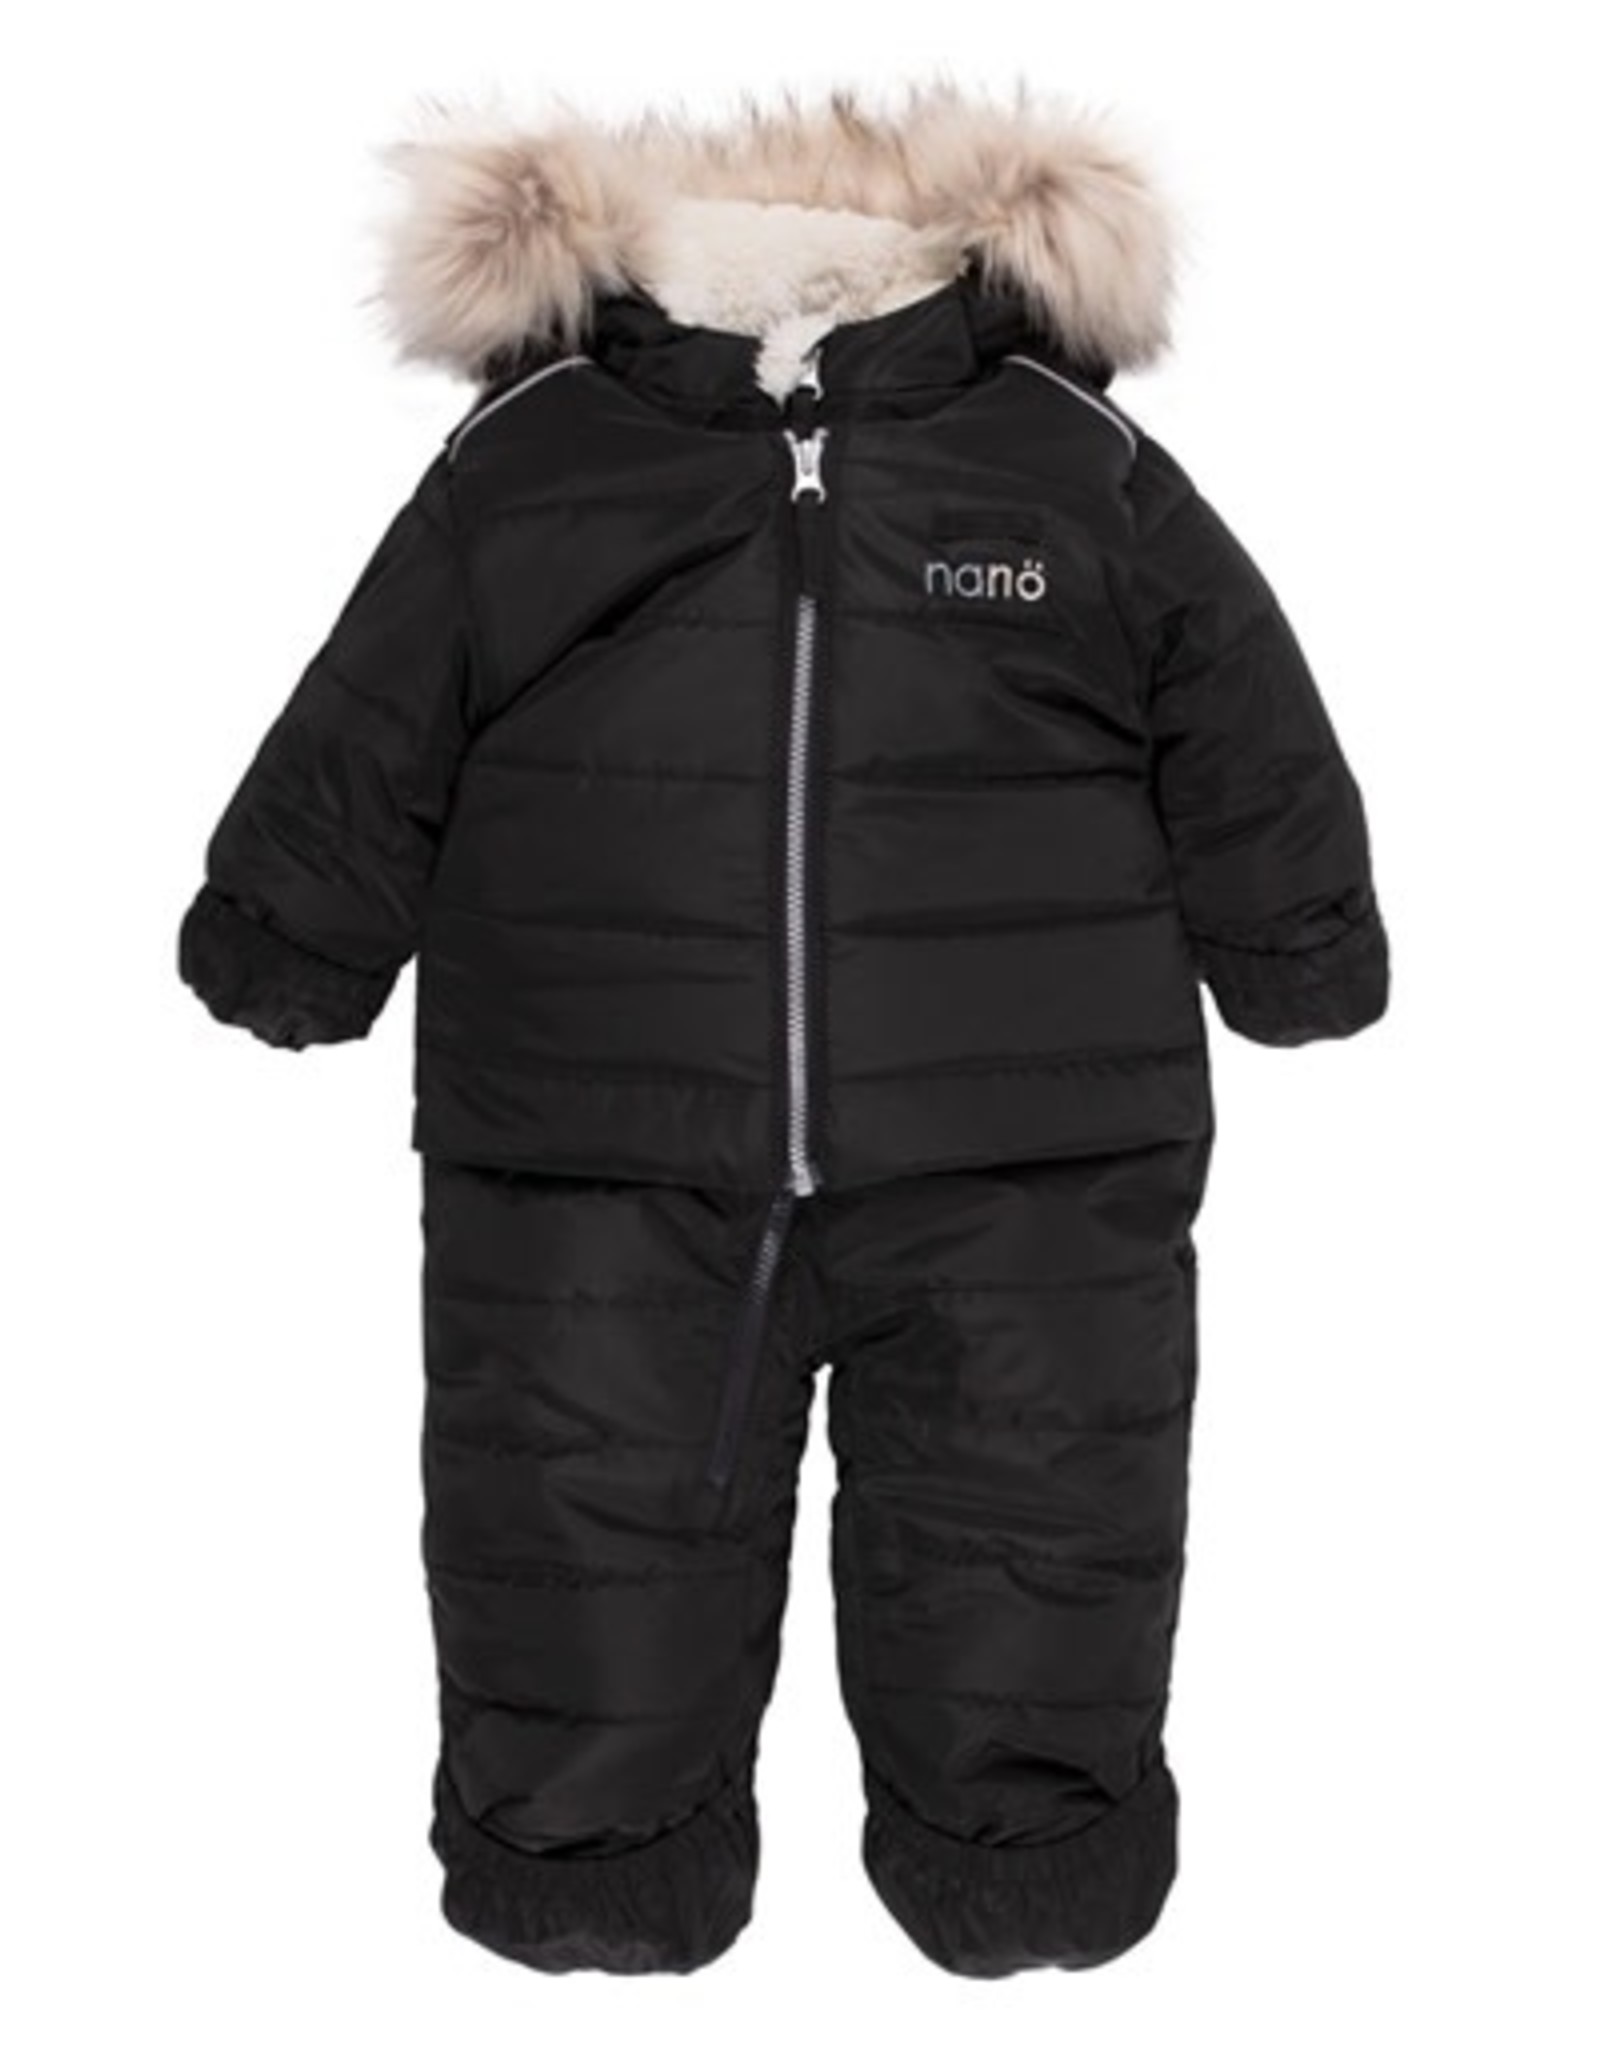 Noruk Black Snowsuit with Faux Fur Hood